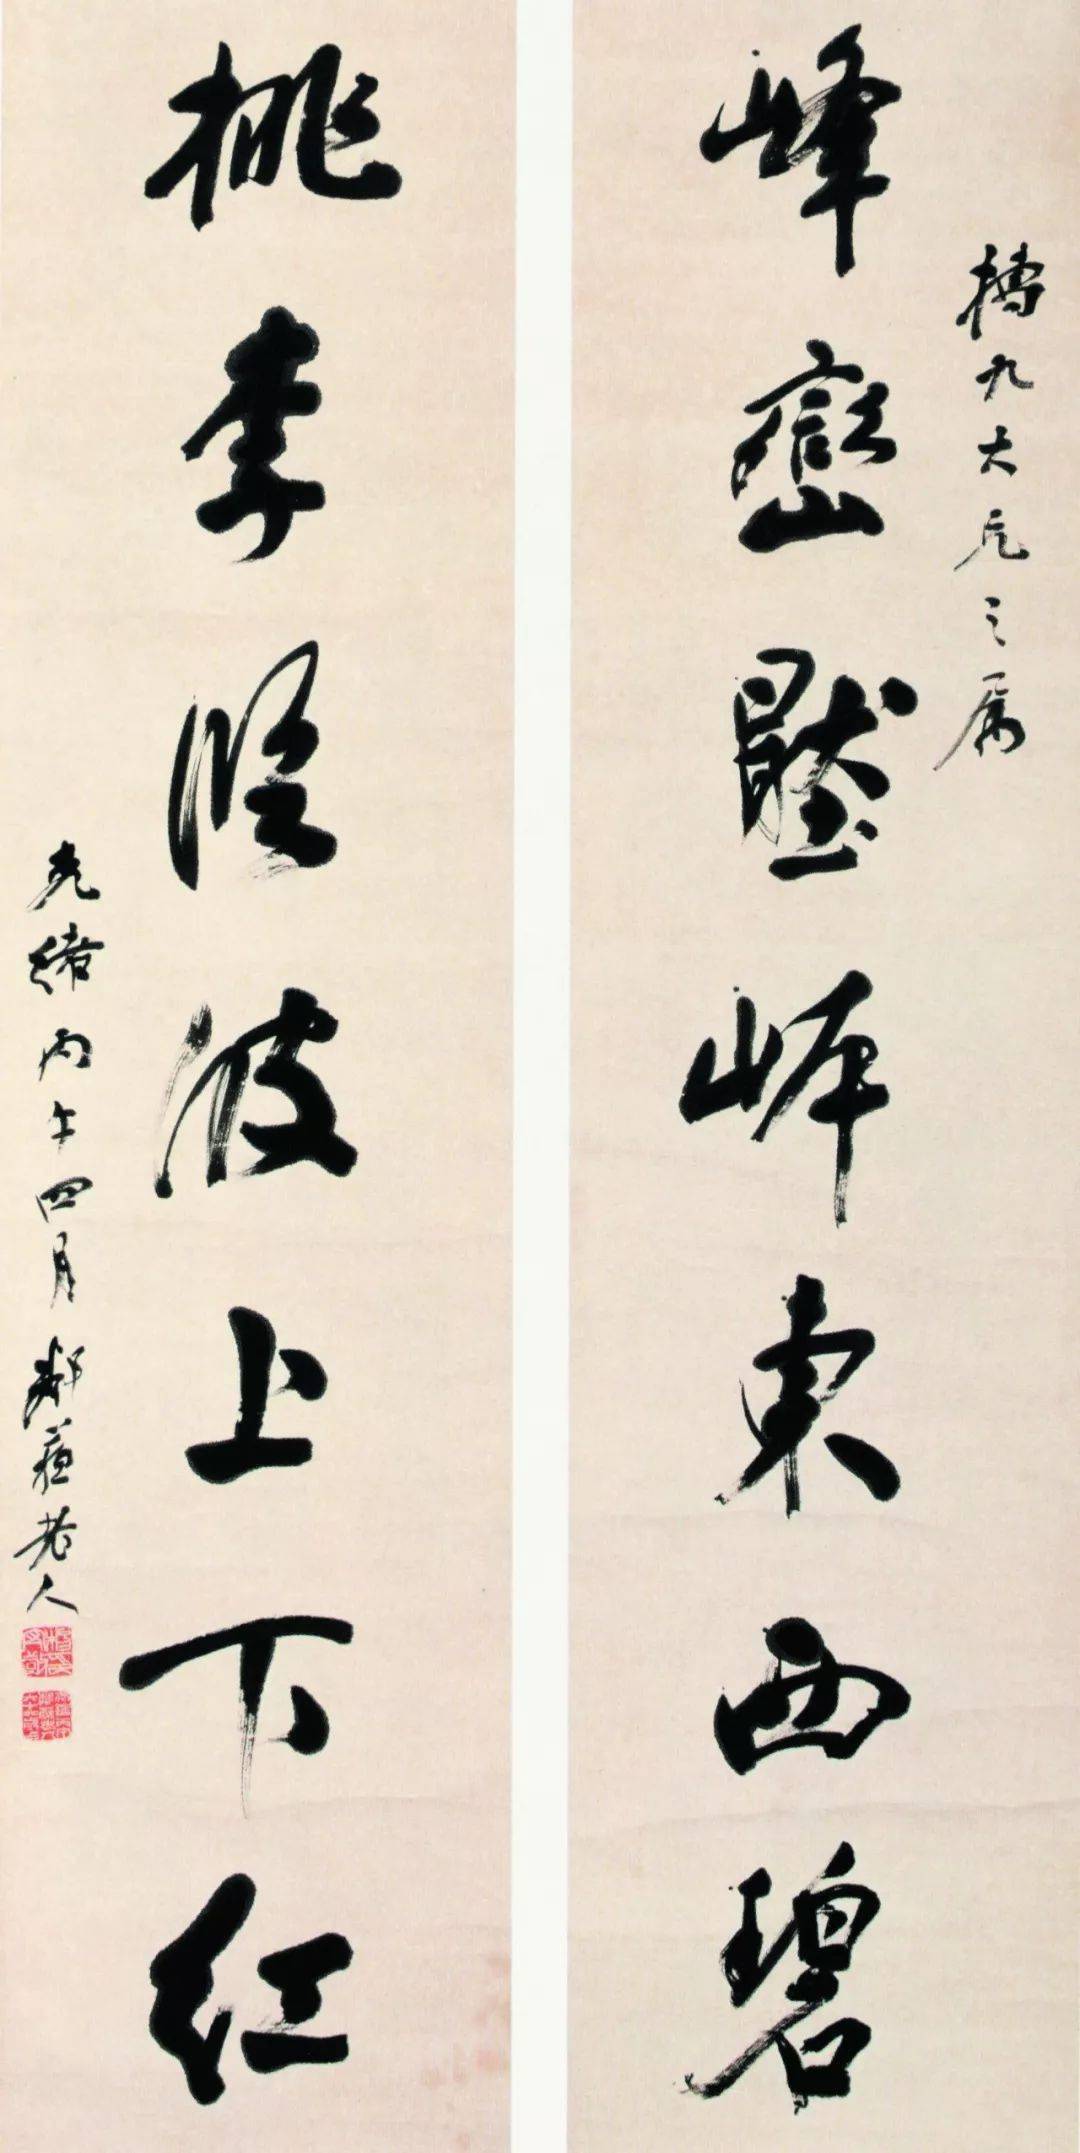 清代在中国书法史上是具有重大意义的转折点,碑派书法风尚是如何